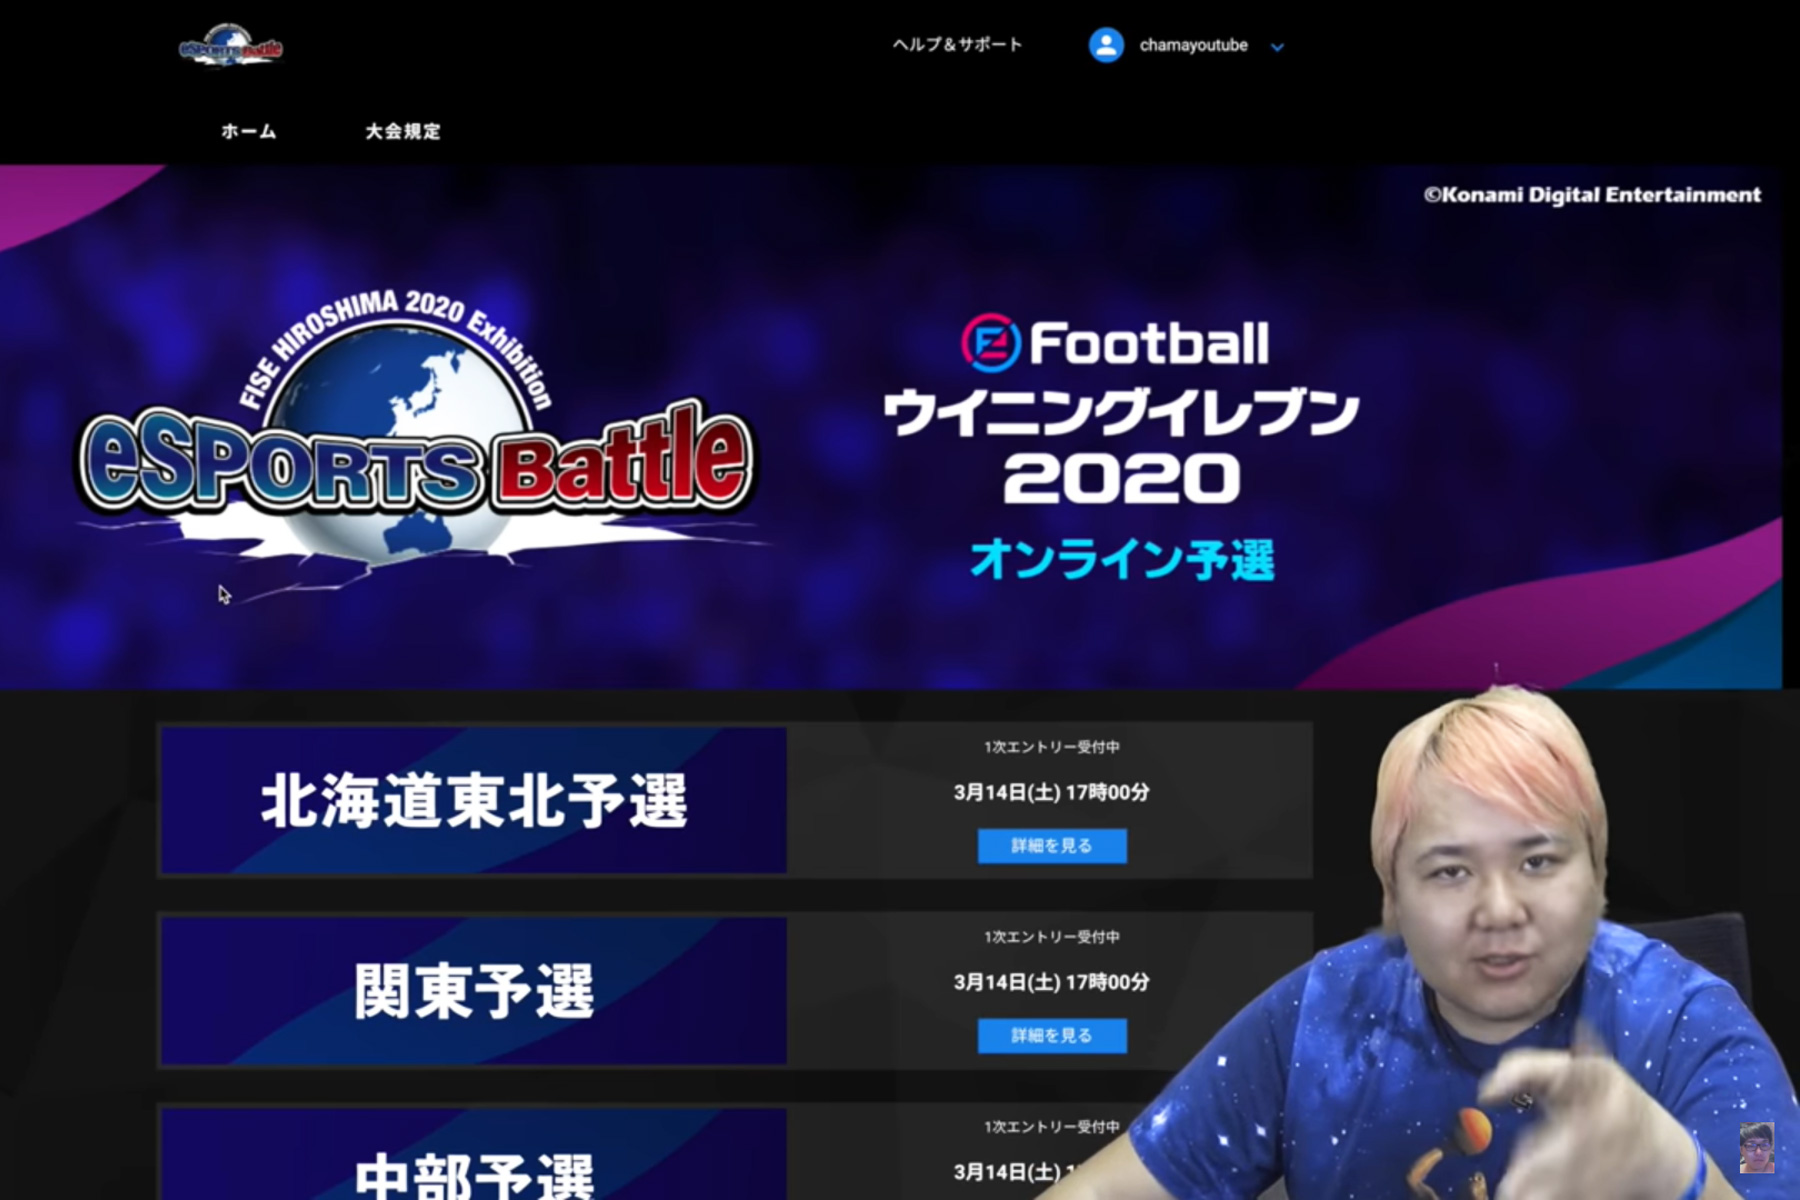 Vamola編集長ちゃまくんがfise広島eスポーツバトルエントリー方法を動画解説 ちゃまくん 広島で会おう Vamola Efootball News